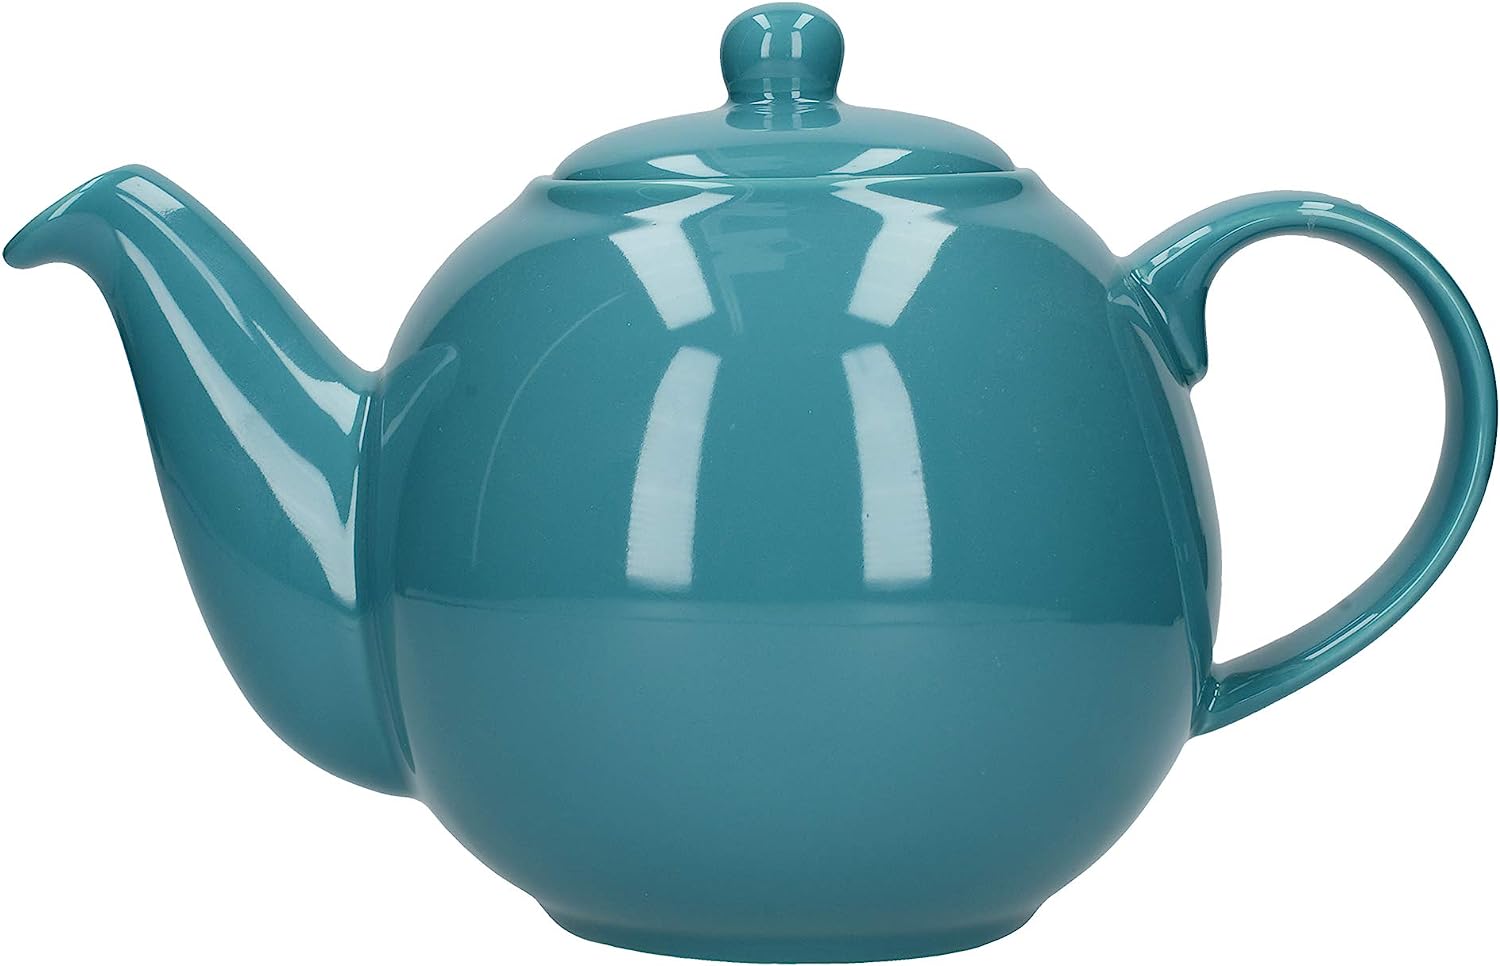 London Pottery UK Globe British Design 6 Cup Teapot 1.5l Turquoise Bora Blue - 17236195